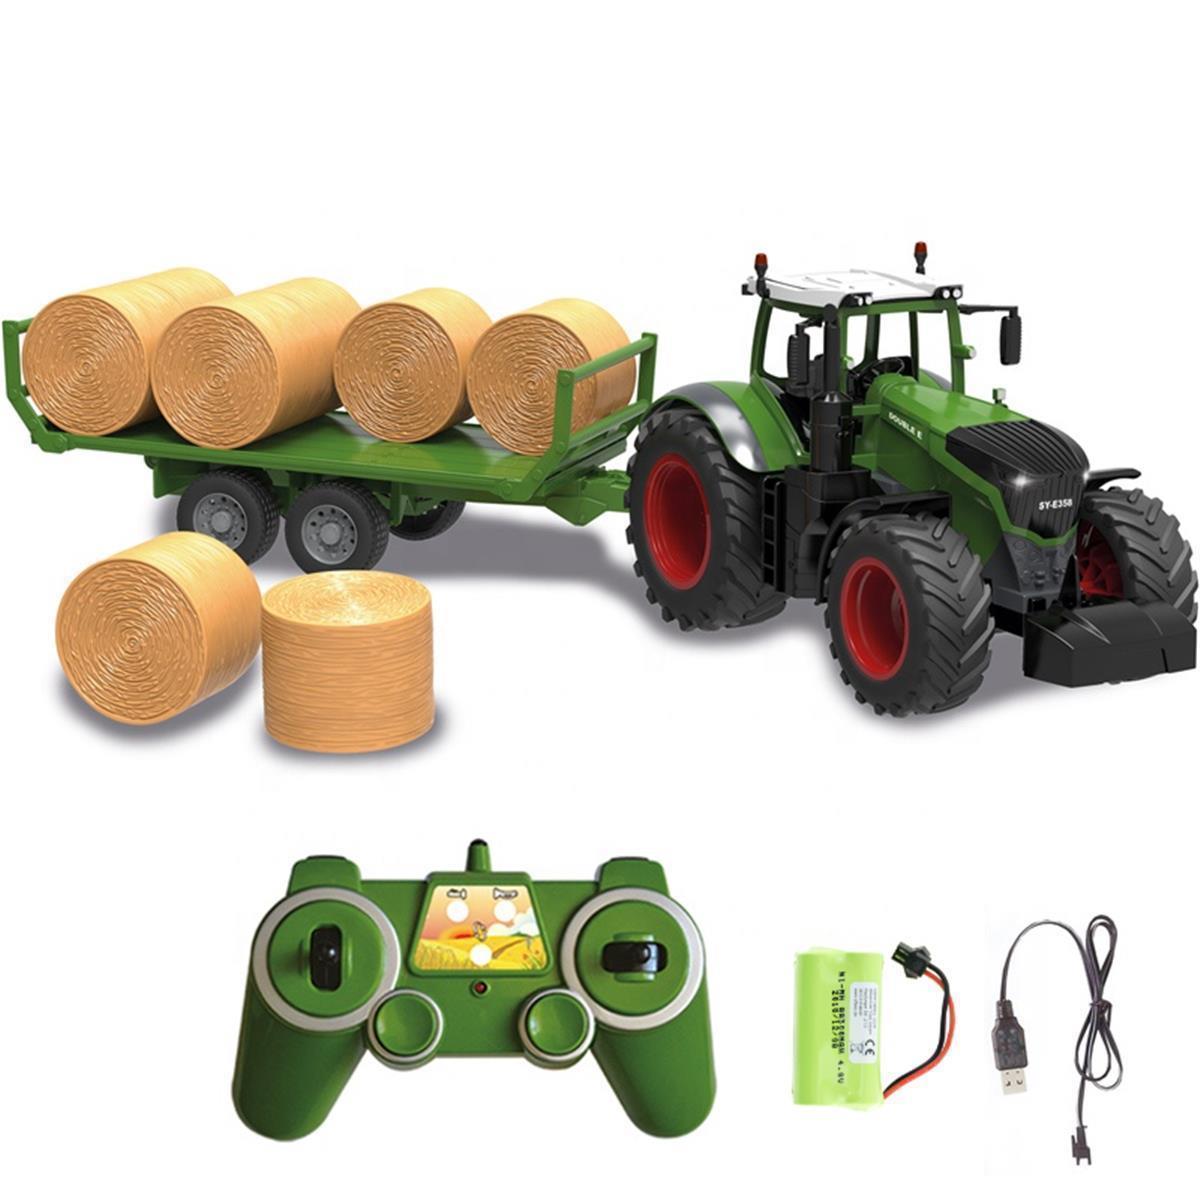 efaso RC Traktor mit Heuwagen 100% RTR ferngesteuertes Fahrzeug  Landwirtschaft Traktor RC Trecker ferngesteuert Licht und Sound